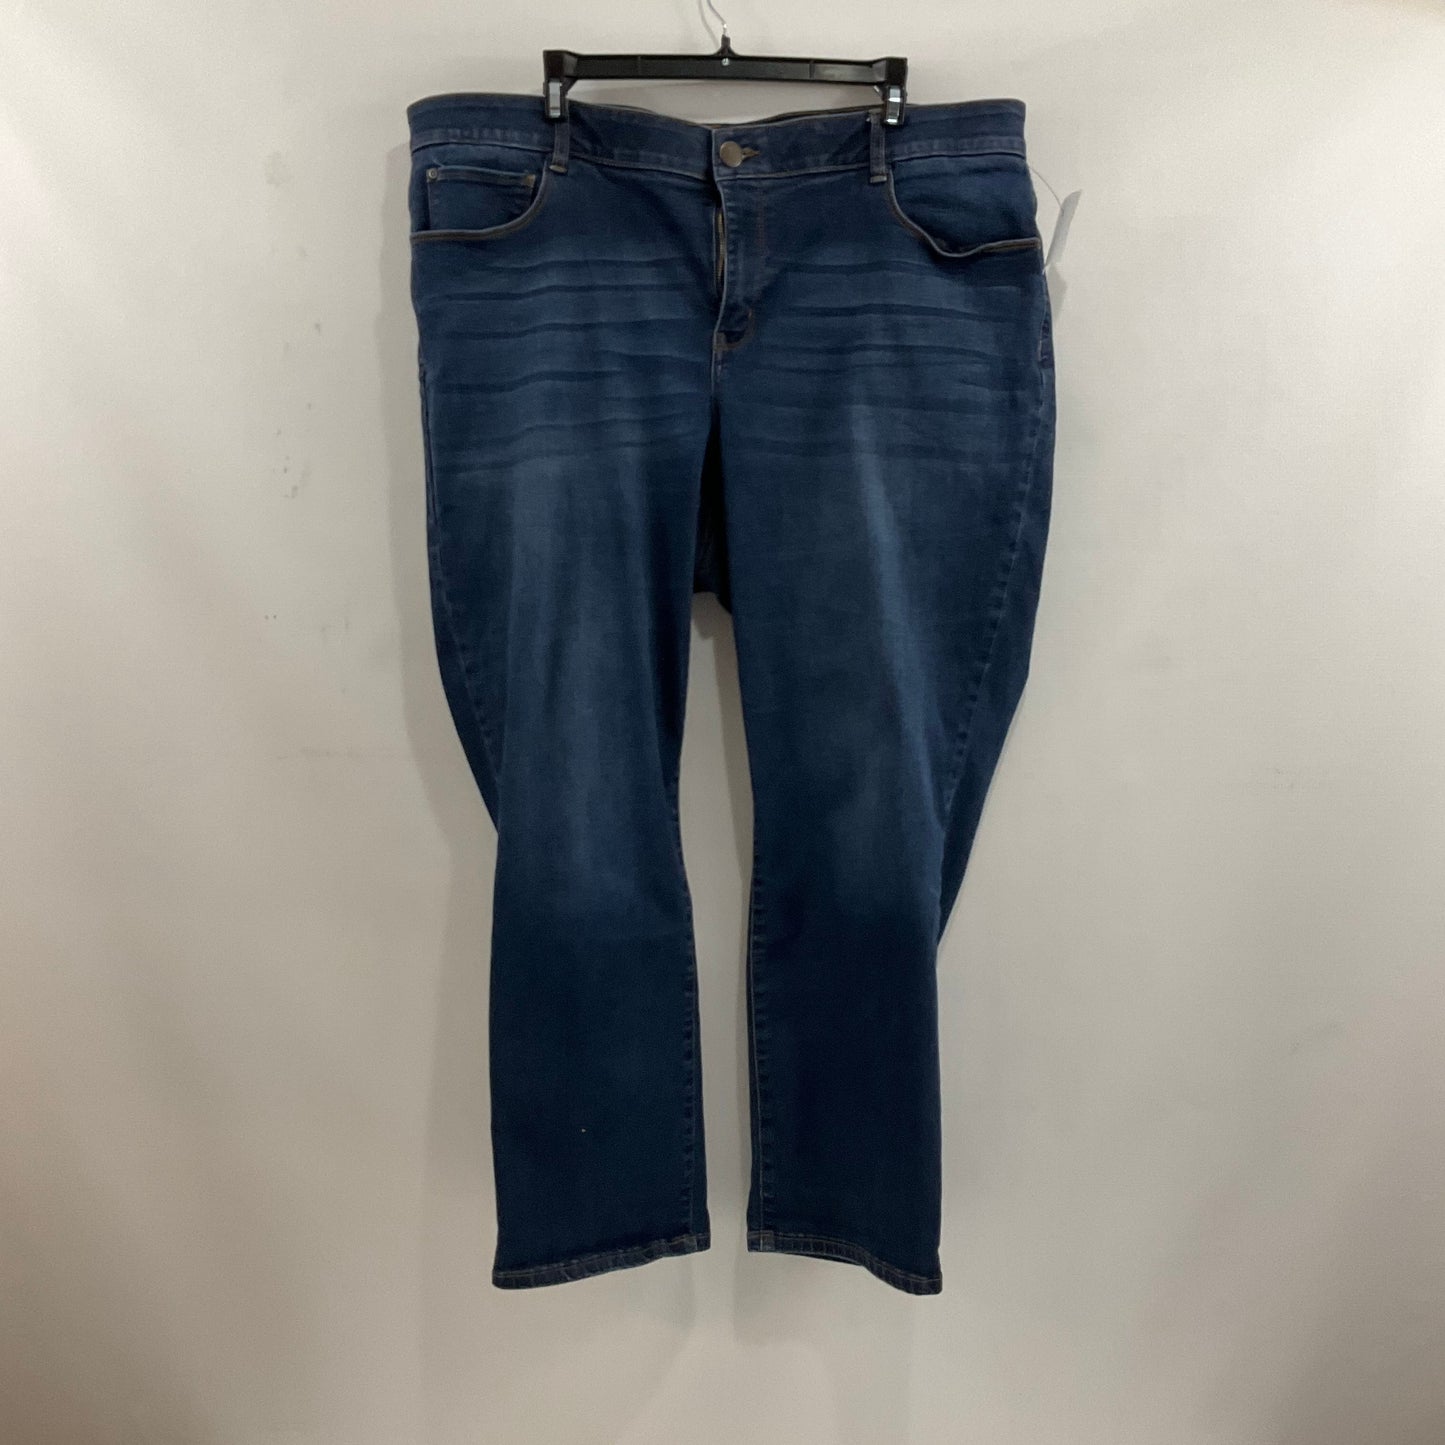 Jeans Skinny By West Bound  Size: 20